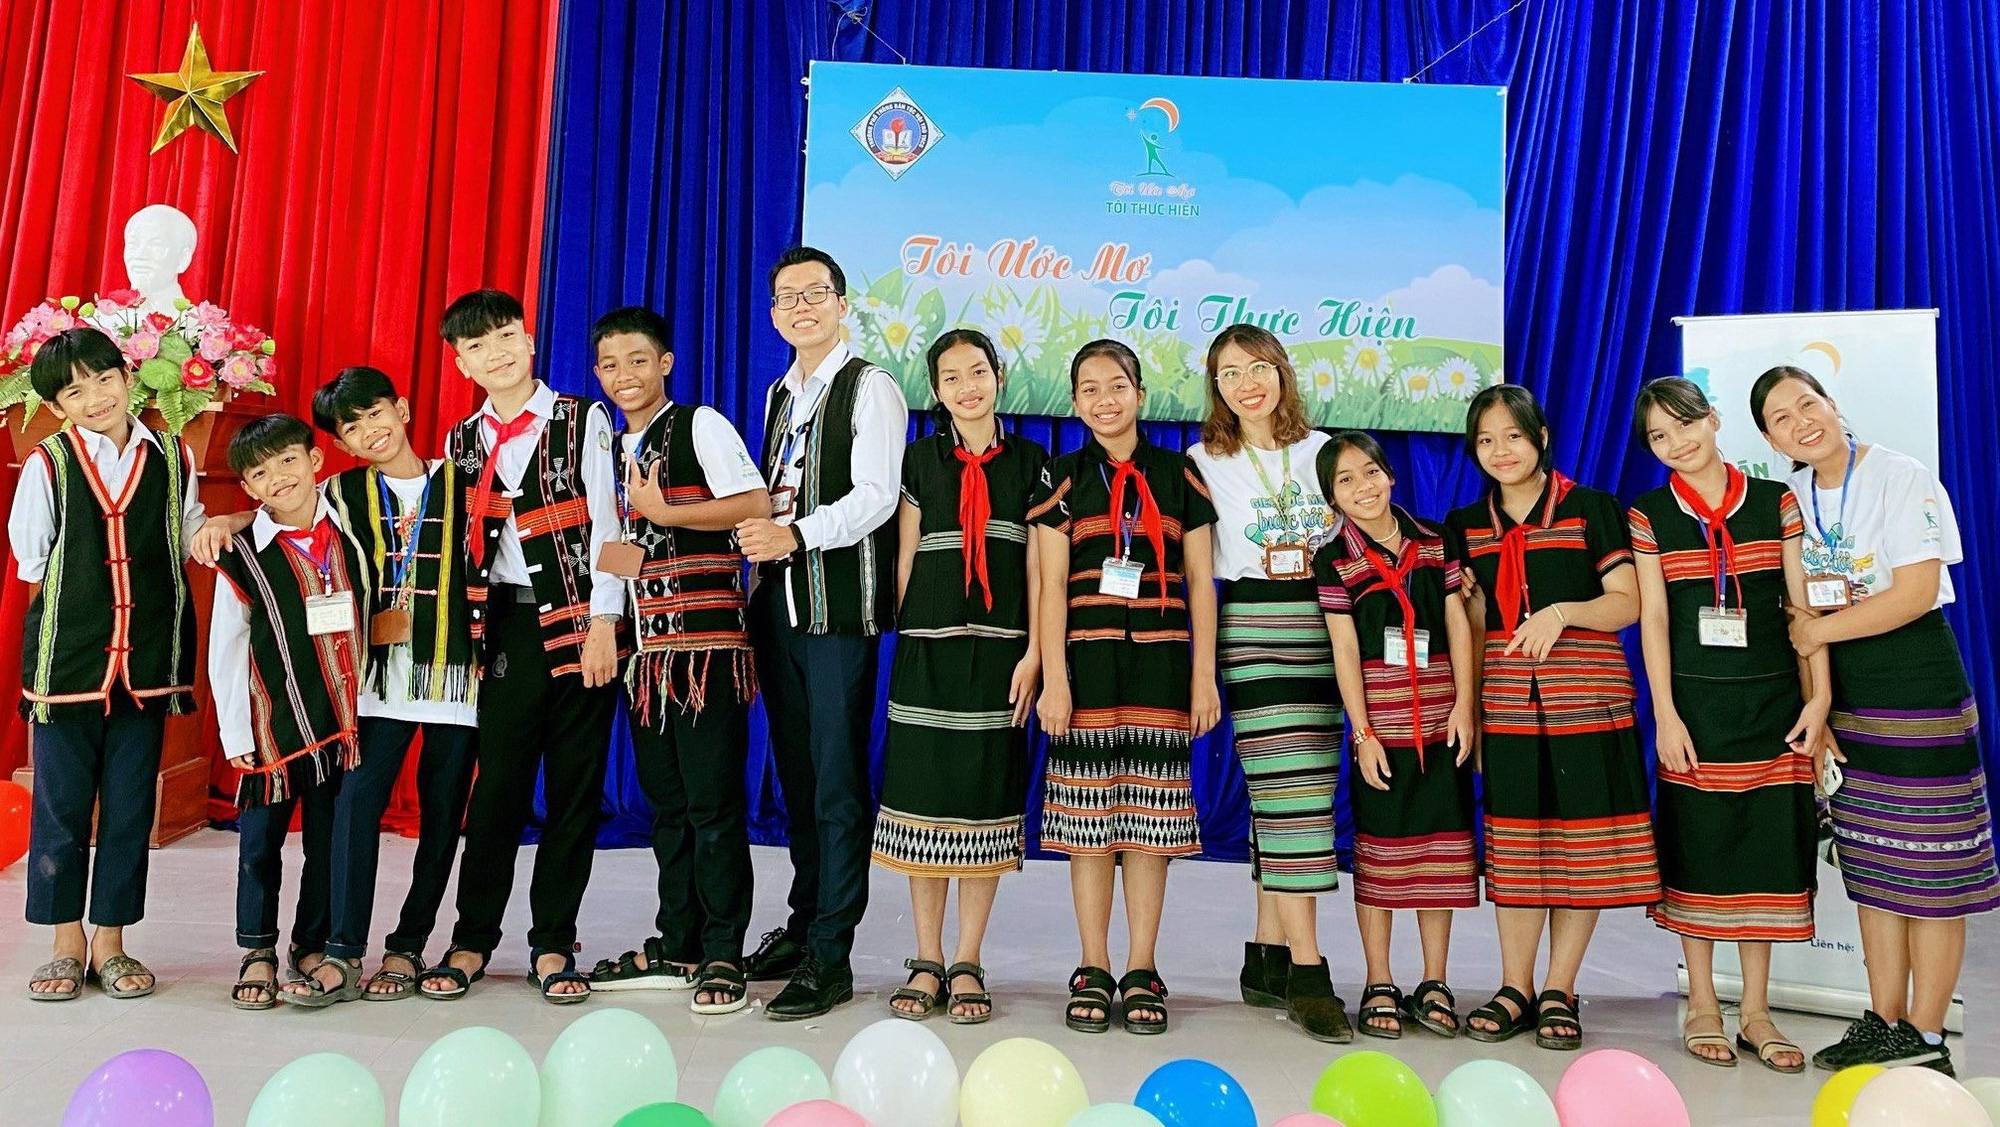 Chị Võ Hồng Tâm (thứ 5, từ phải qua) đã mang khóa học 0 đồng “I believe in me” đến Tây Giang (Quảng Nam) - Ảnh: NVCC